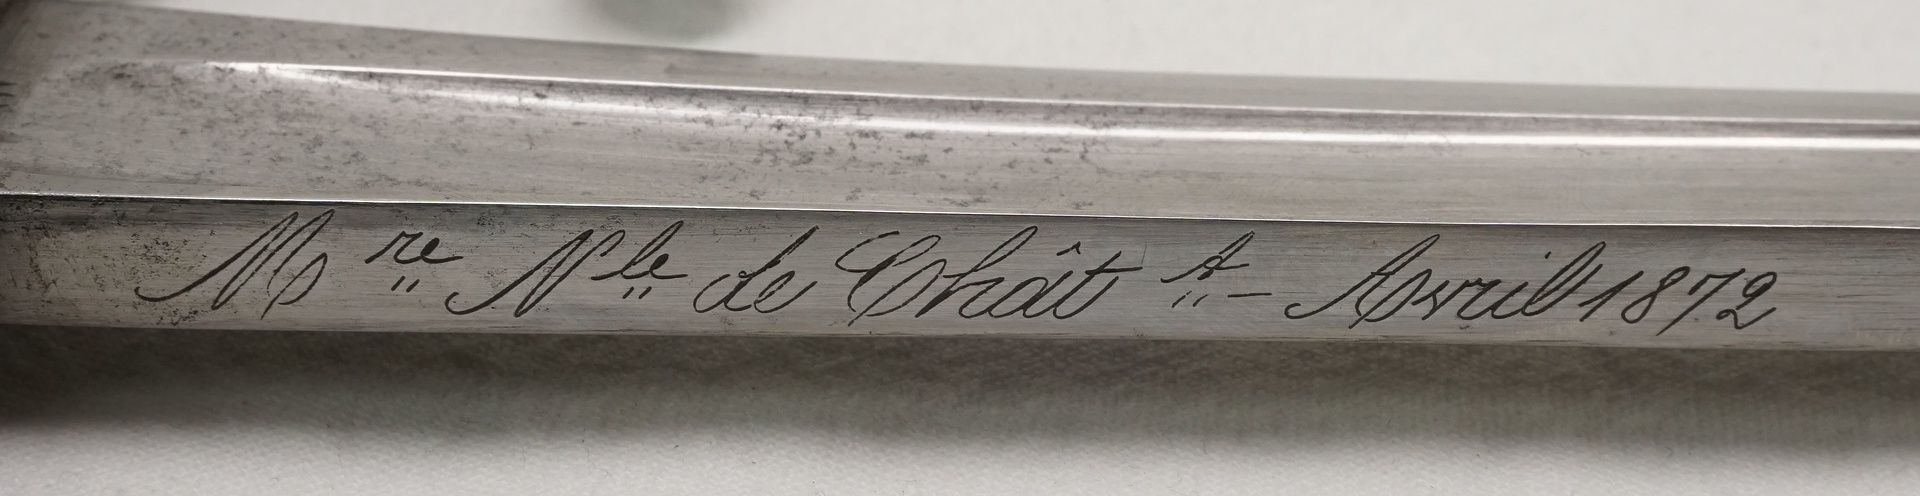 Chassepot Bajonett, 1872mit Hersteller auf dem Klingenrücken, Messing, Stahl, Nummerngleich, Scheide - Bild 3 aus 6